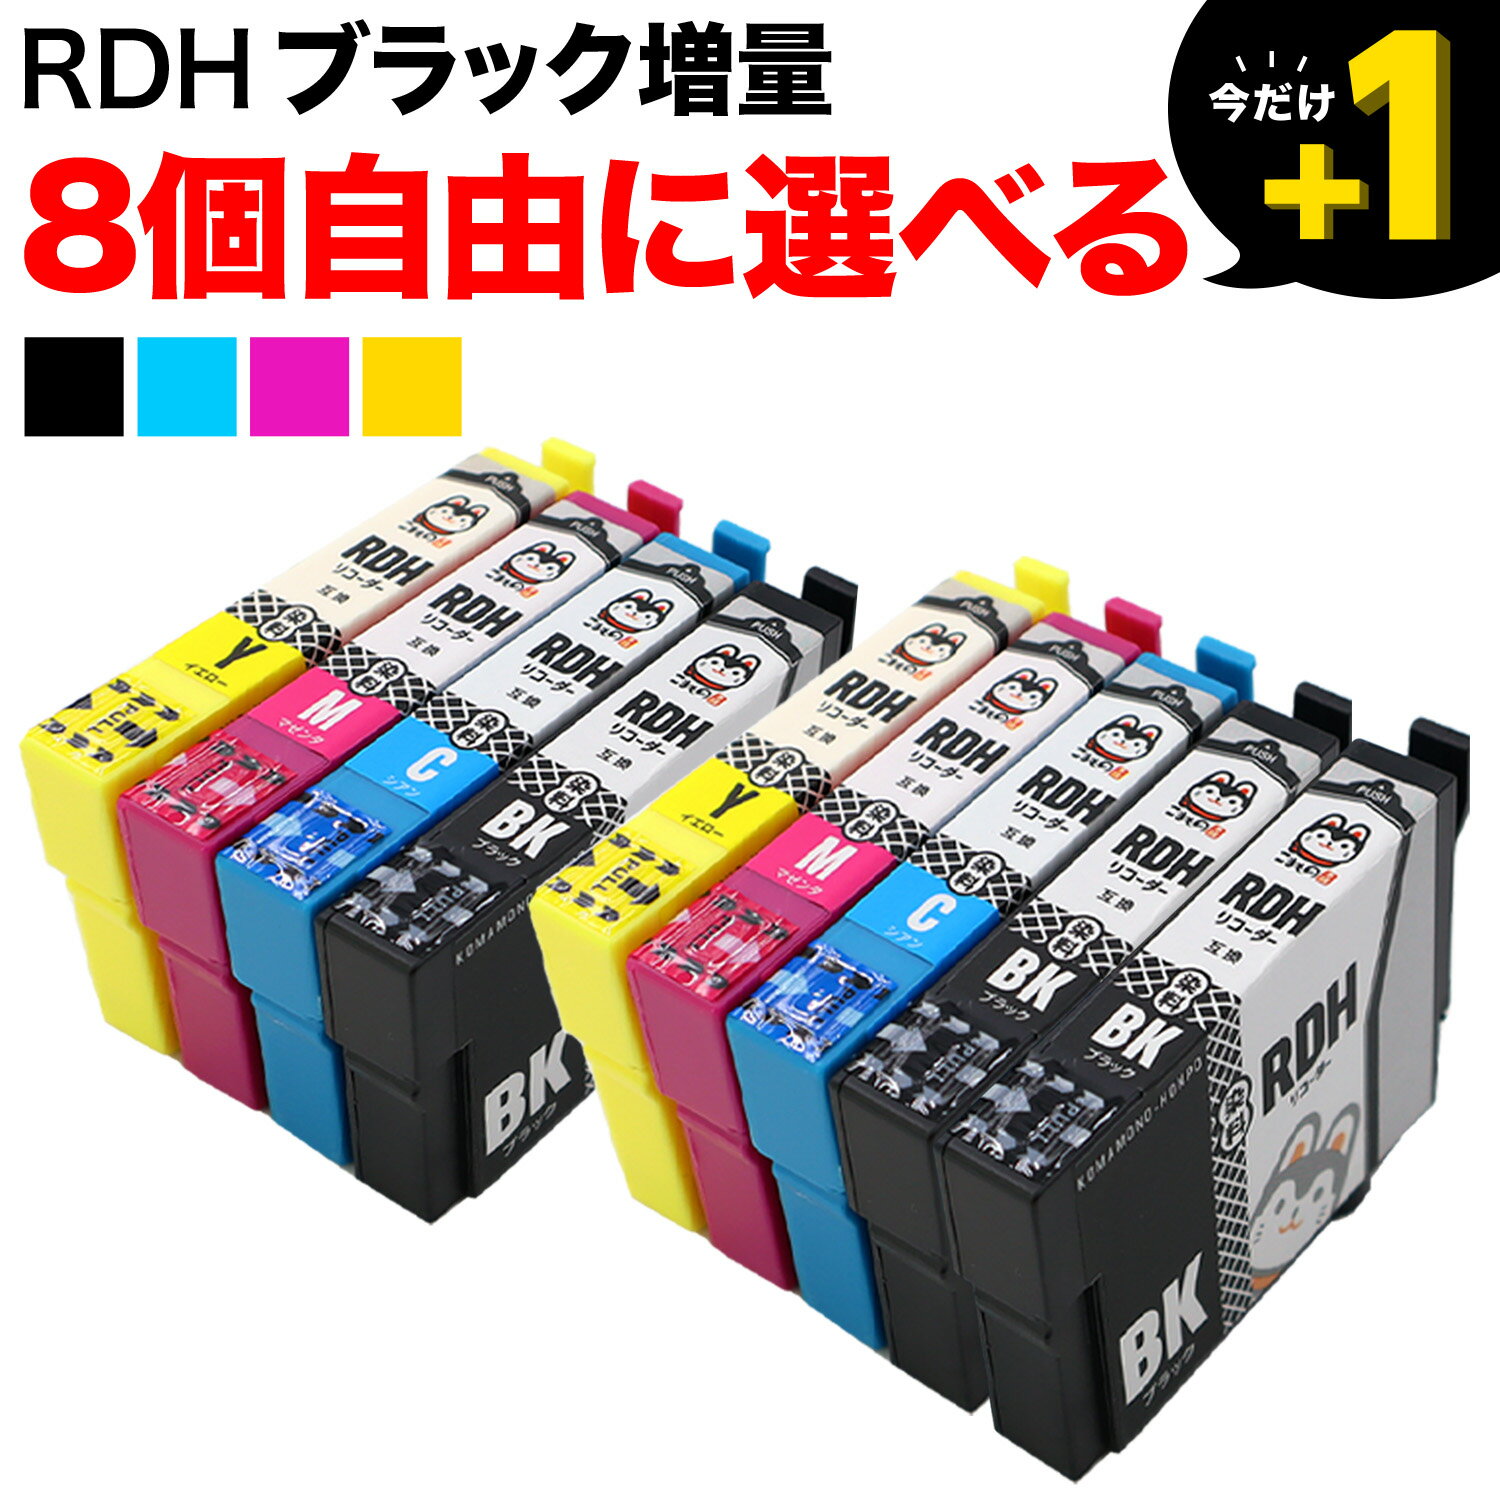 ポイント増量中 RDH リコーダー エプソン用 互換インクカートリッジ 自由選択8個セット 増量BK フリーチョイス 選べる8個 PX-048A PX-049A